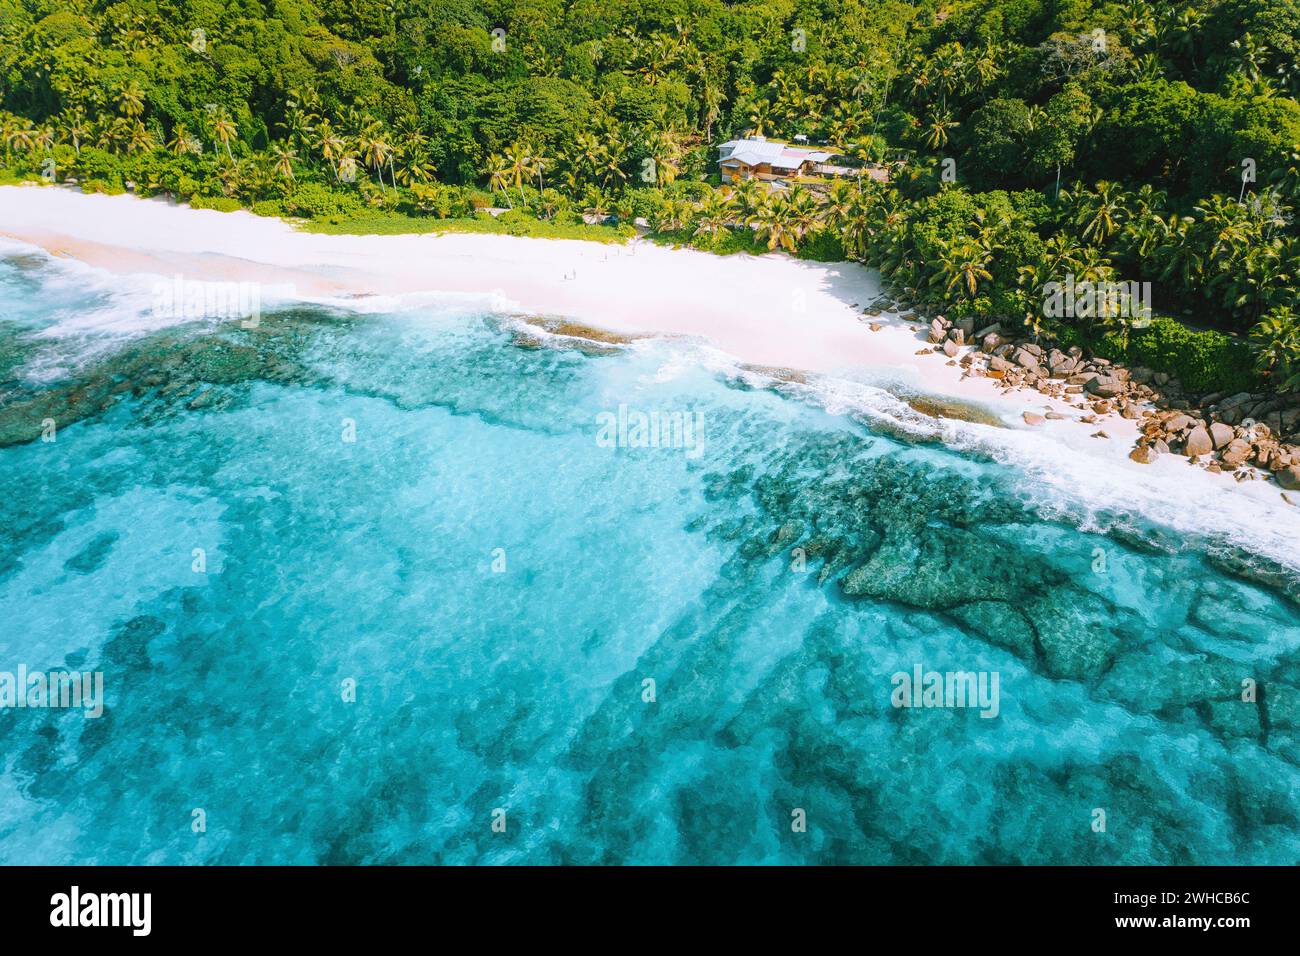 Photo aérienne de l'étrange paradis tropical plage Anse Bazarca à l'île de Mahé, Seychelles. Sable blanc, eau turquoise, palmiers, rochers en granit. Banque D'Images